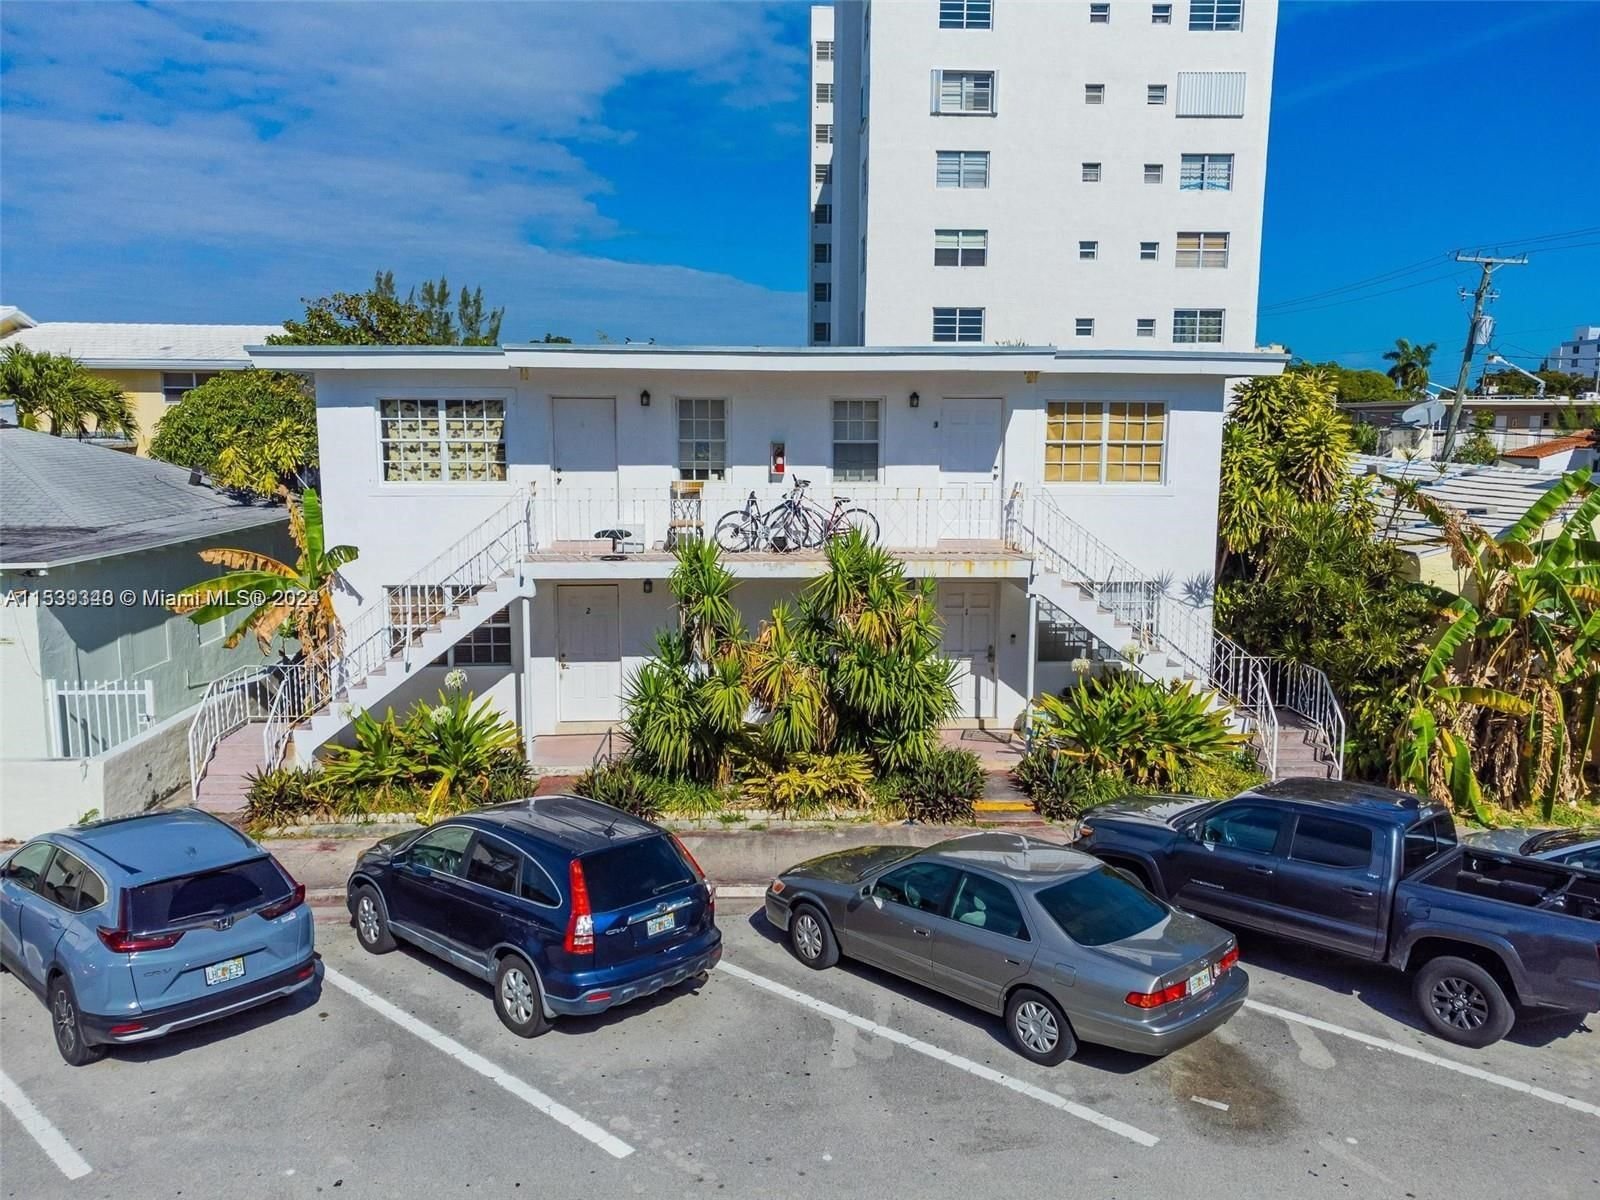 Real estate property located at 7800 Byron Ave #4, Miami-Dade County, VILLA ELENA CONDO, Miami Beach, FL